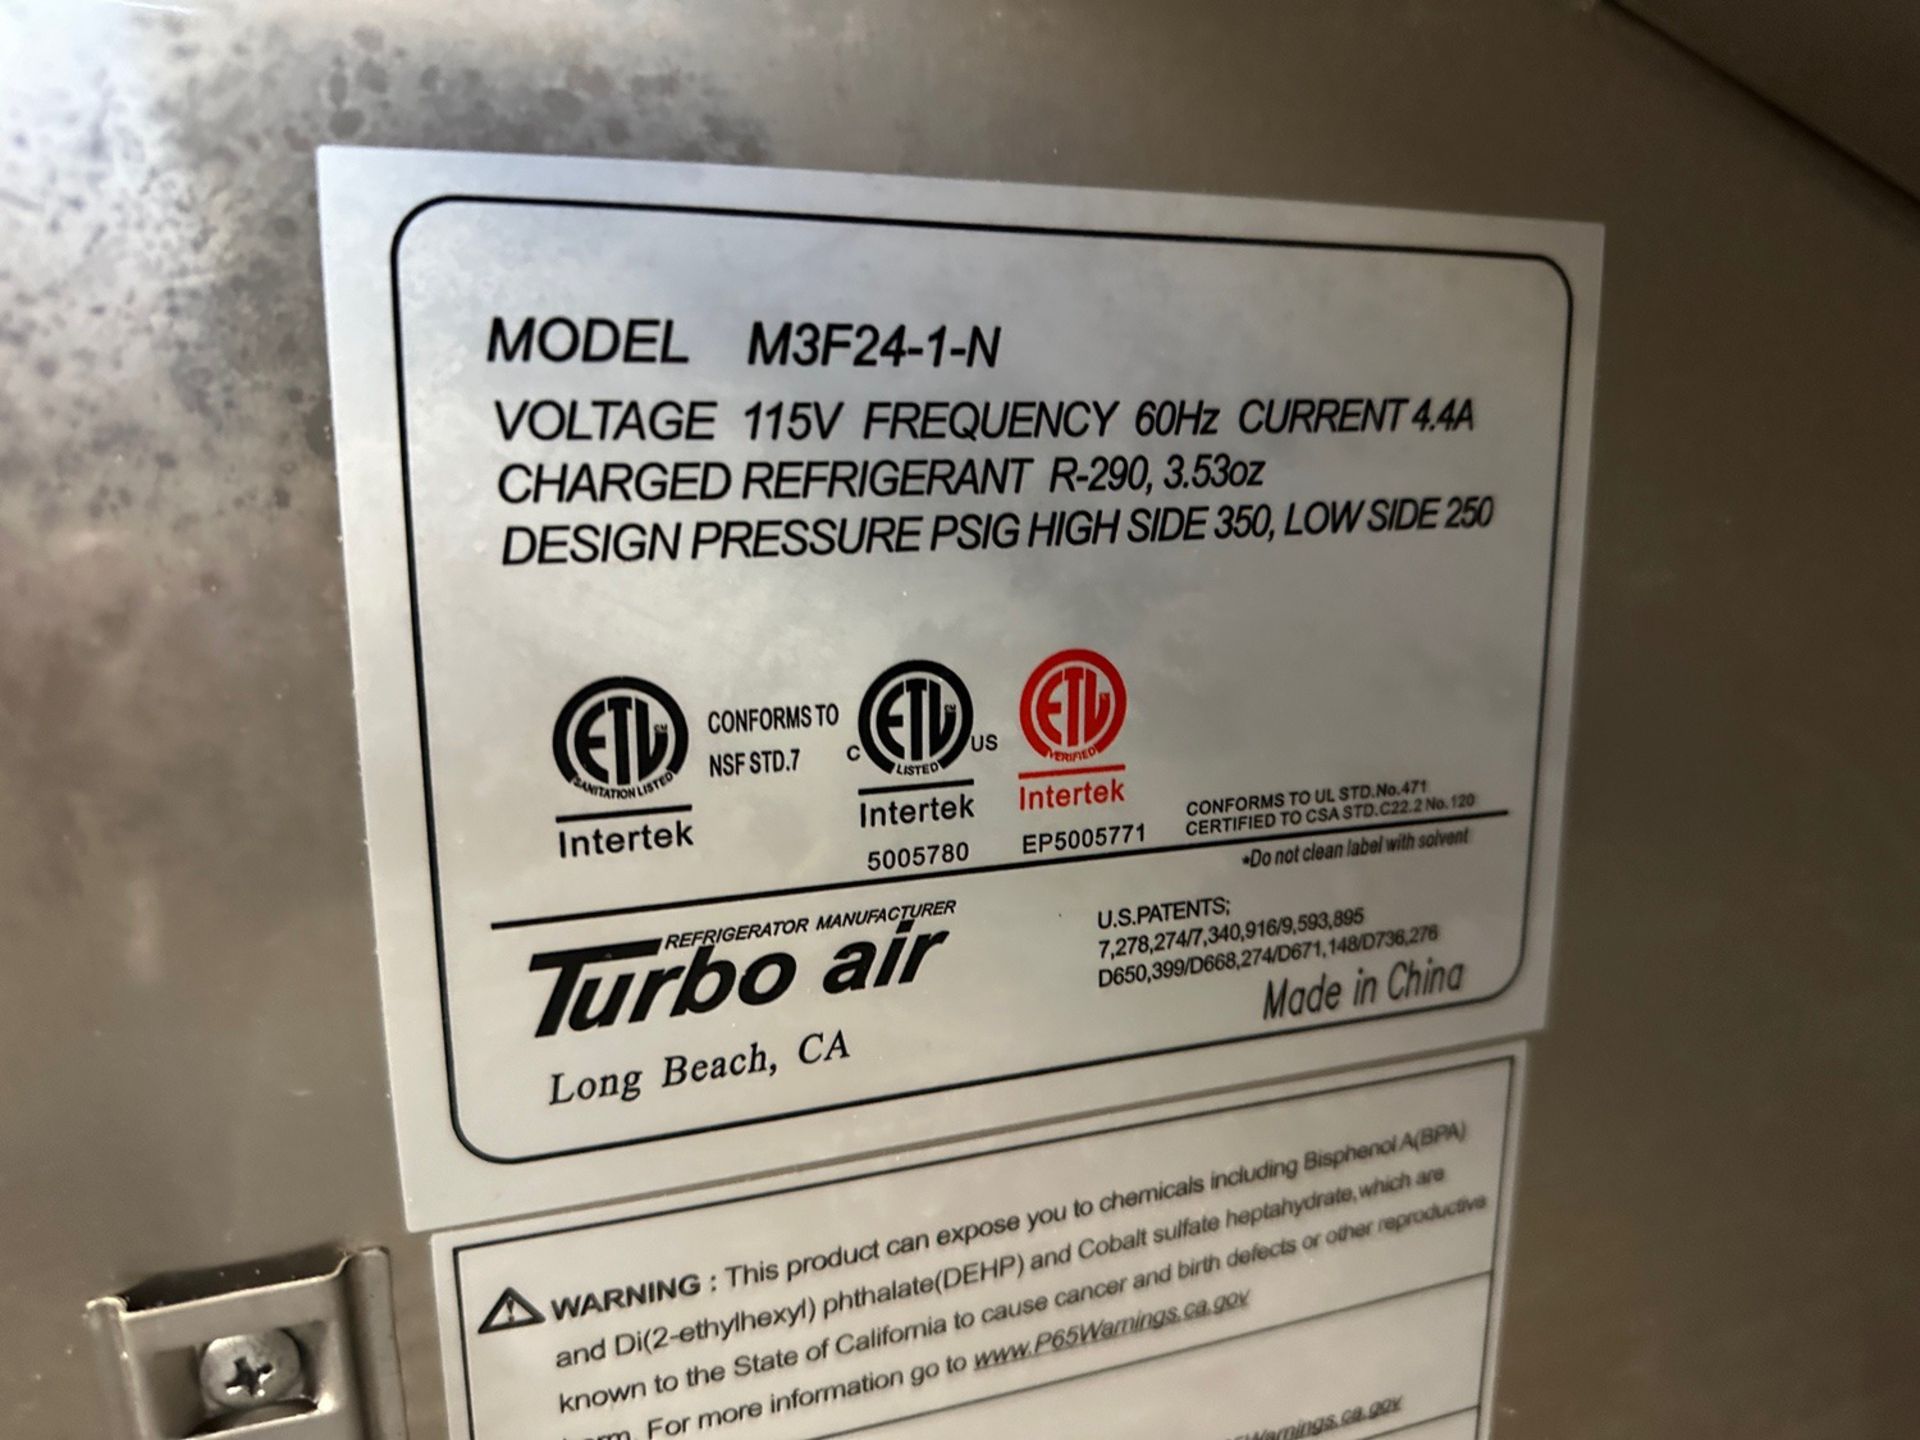 Turbo Air 1-Door Stainless Steel Cooler - Model M3F24-1-N - Image 2 of 2